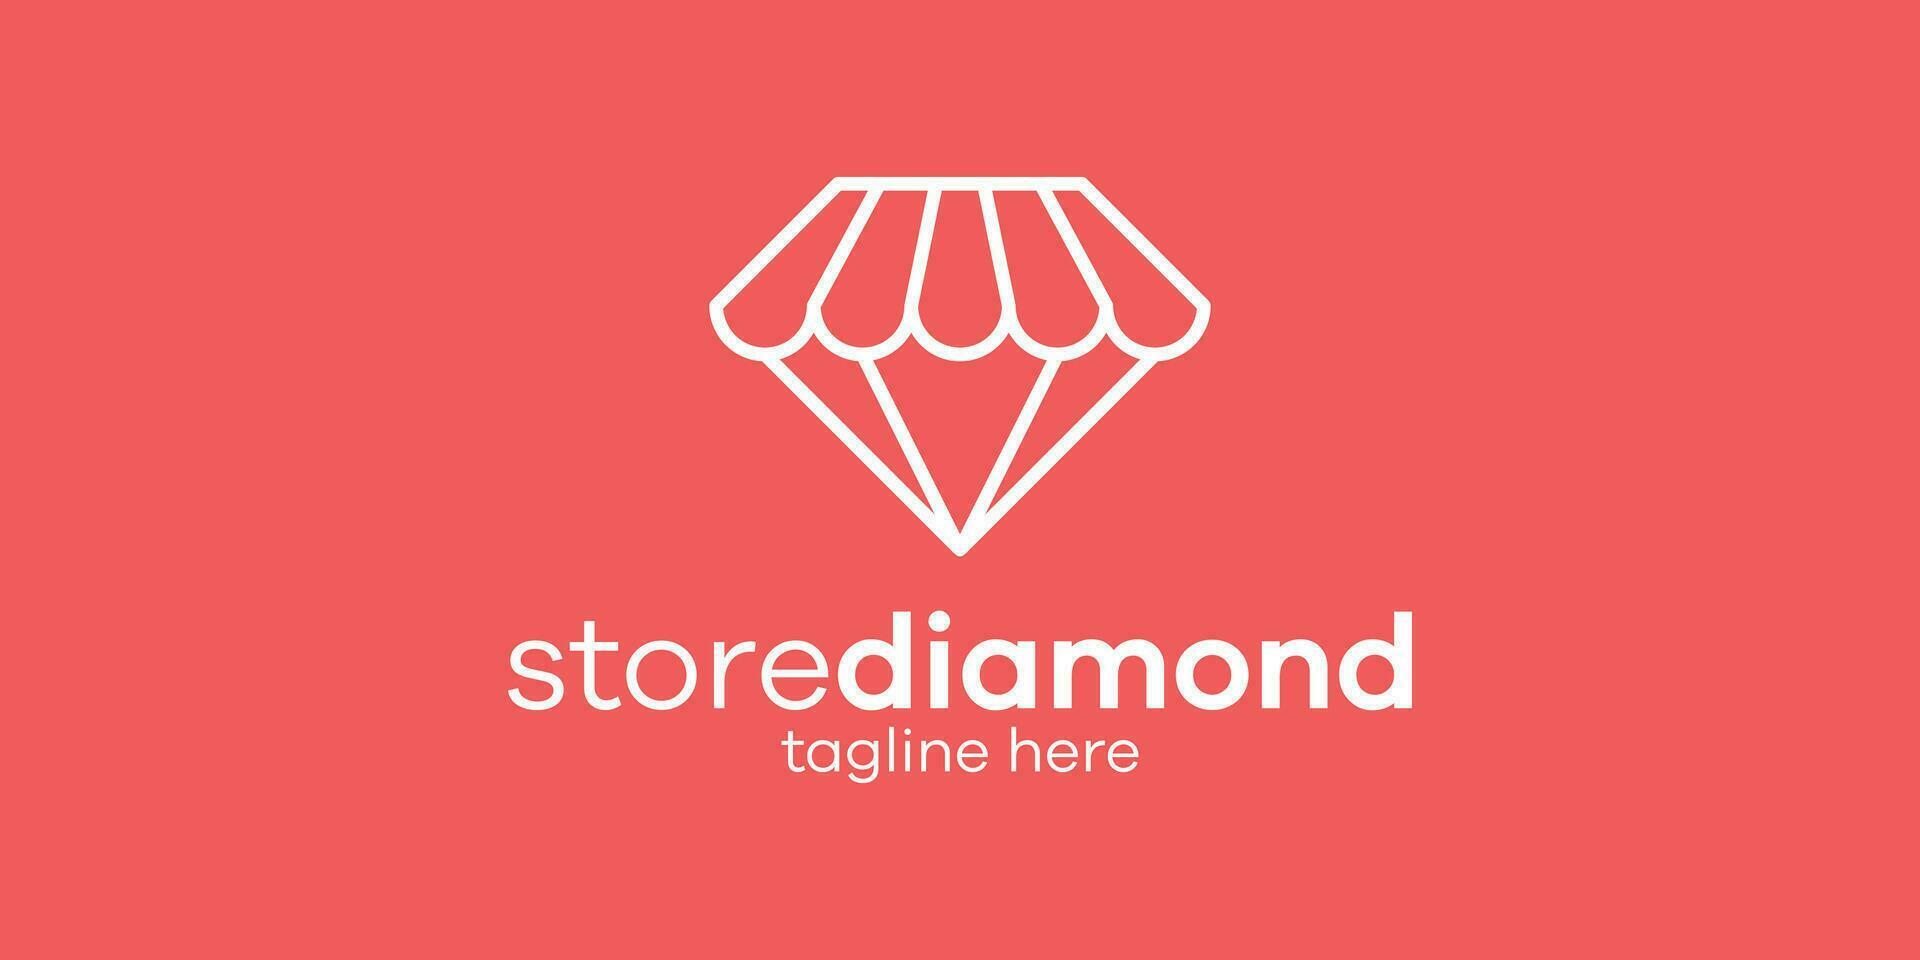 logo design store and diamond icon vector minimalist